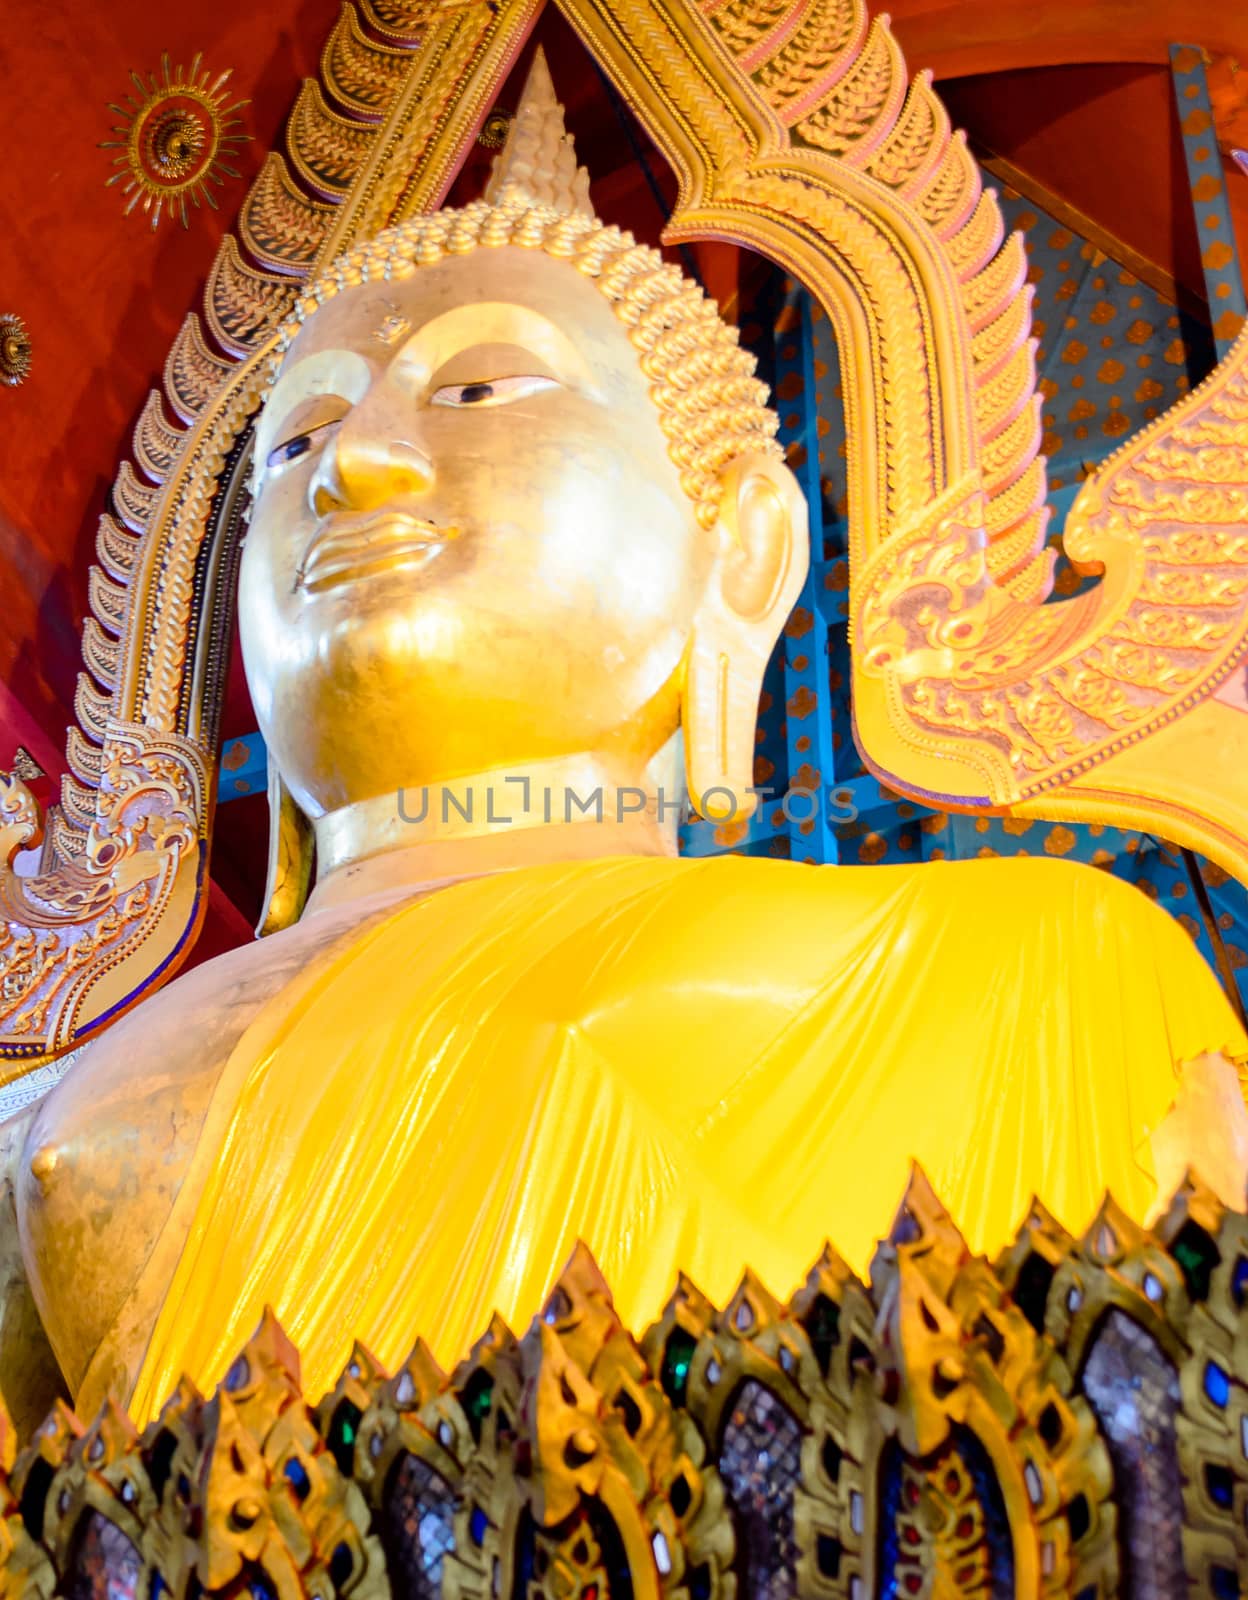 Golden Buddha Image in Wat Ton Son,Ang Thong,Thailand by kobfujar